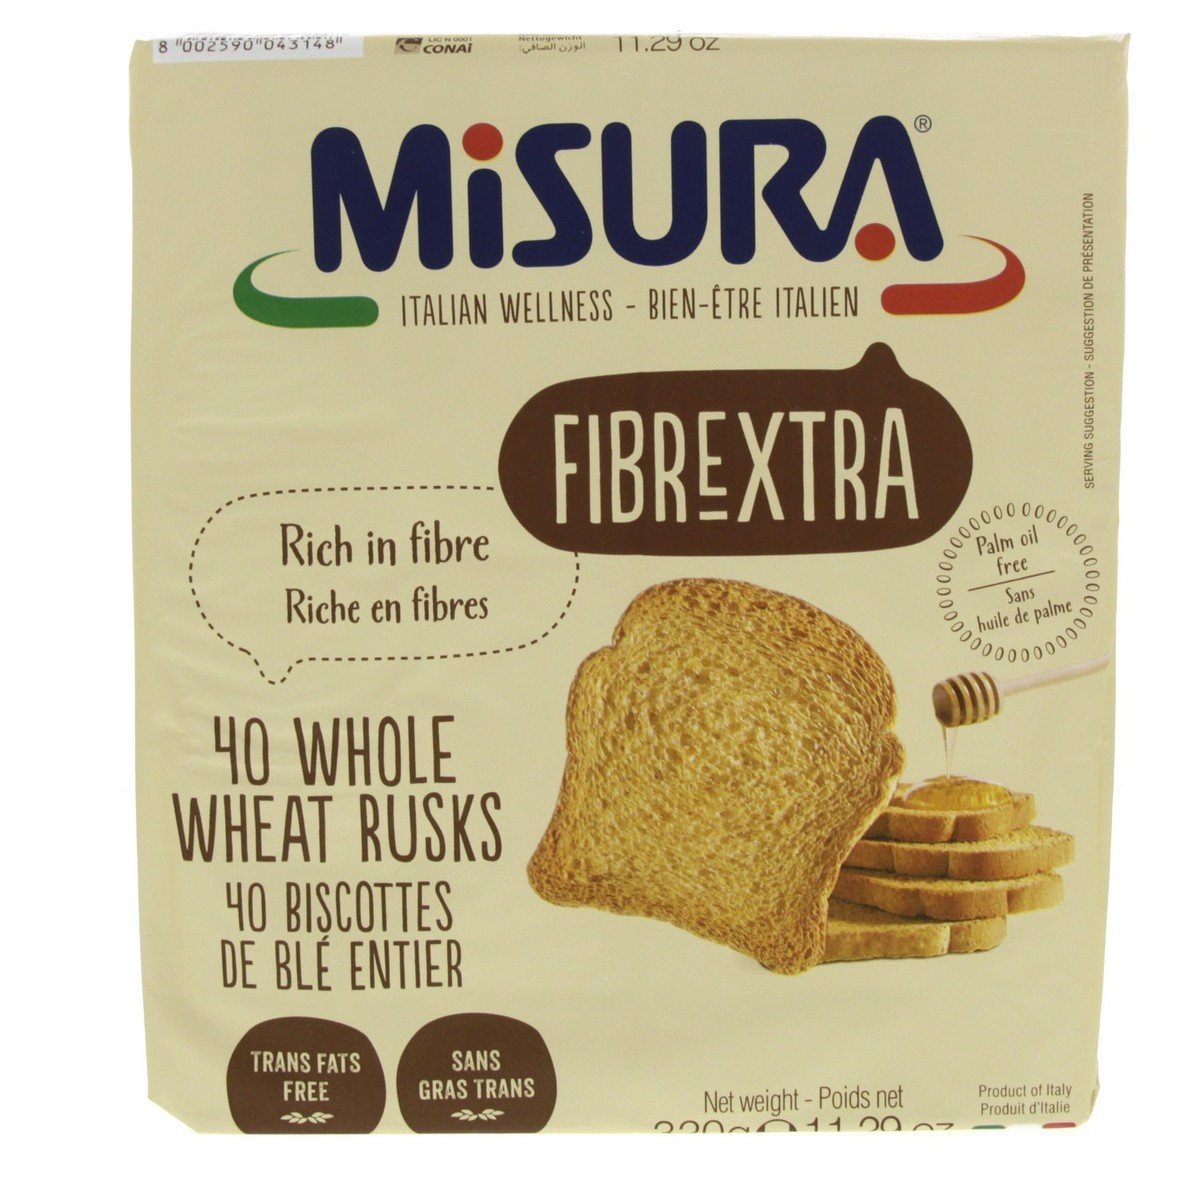 Misura Whole Wheat Rusk Fibre Extra 320 g